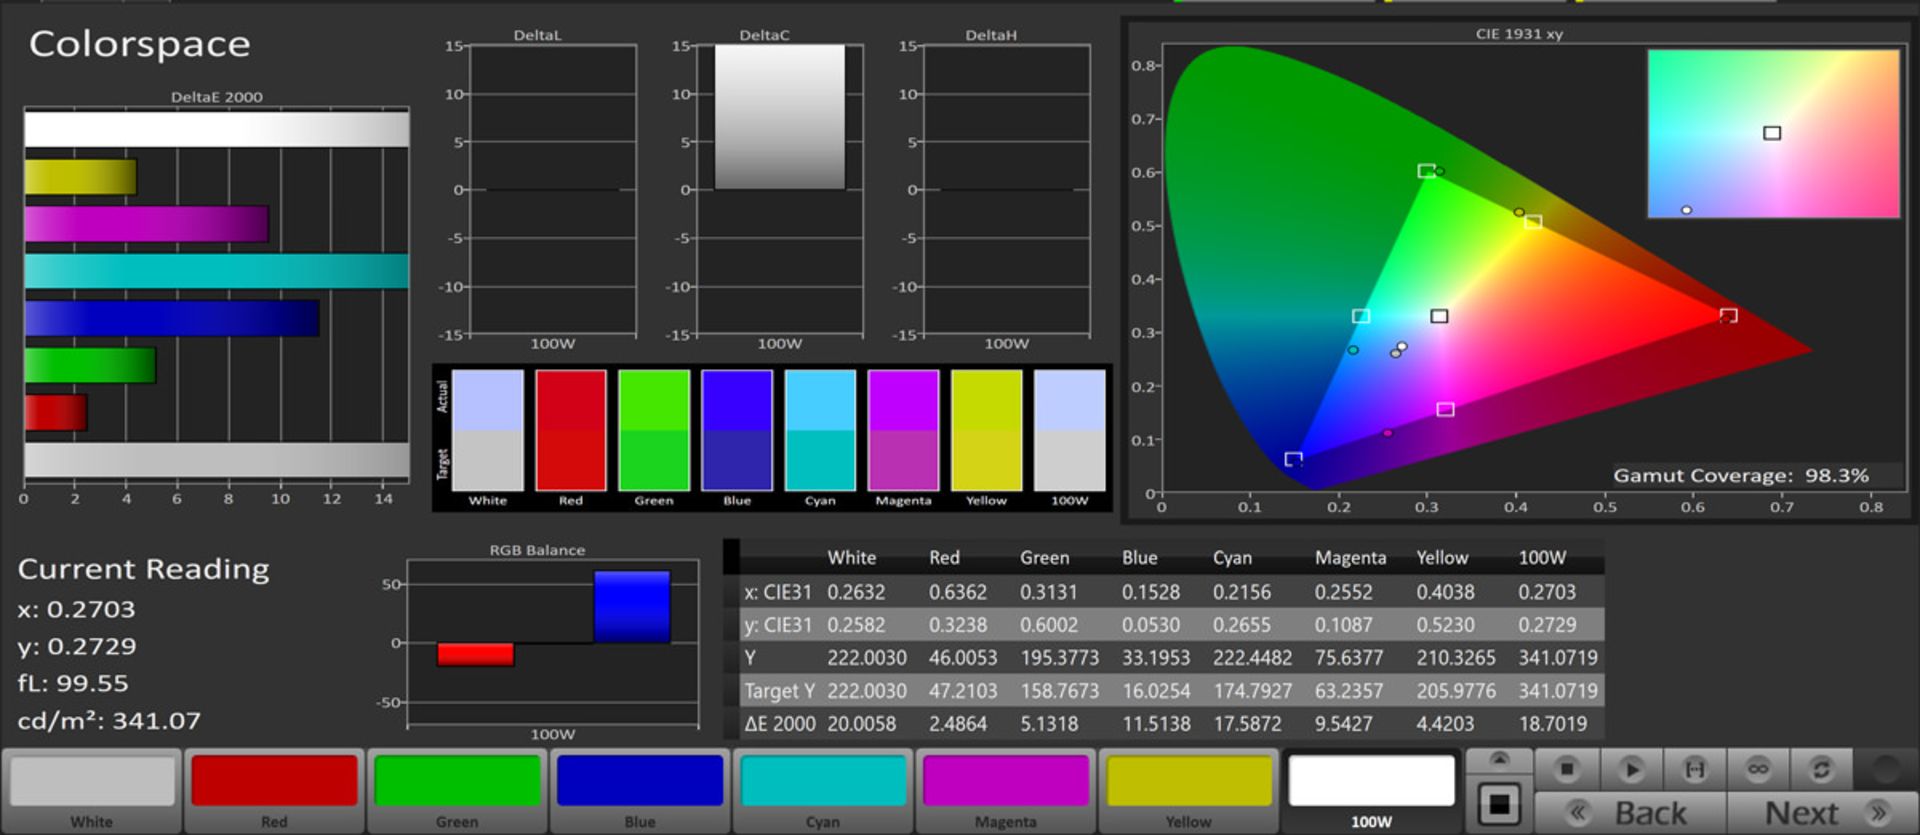 پوشش فضای رنگی sRGB در حالت Vivid - تلویزیون Mi TV 4S 2019